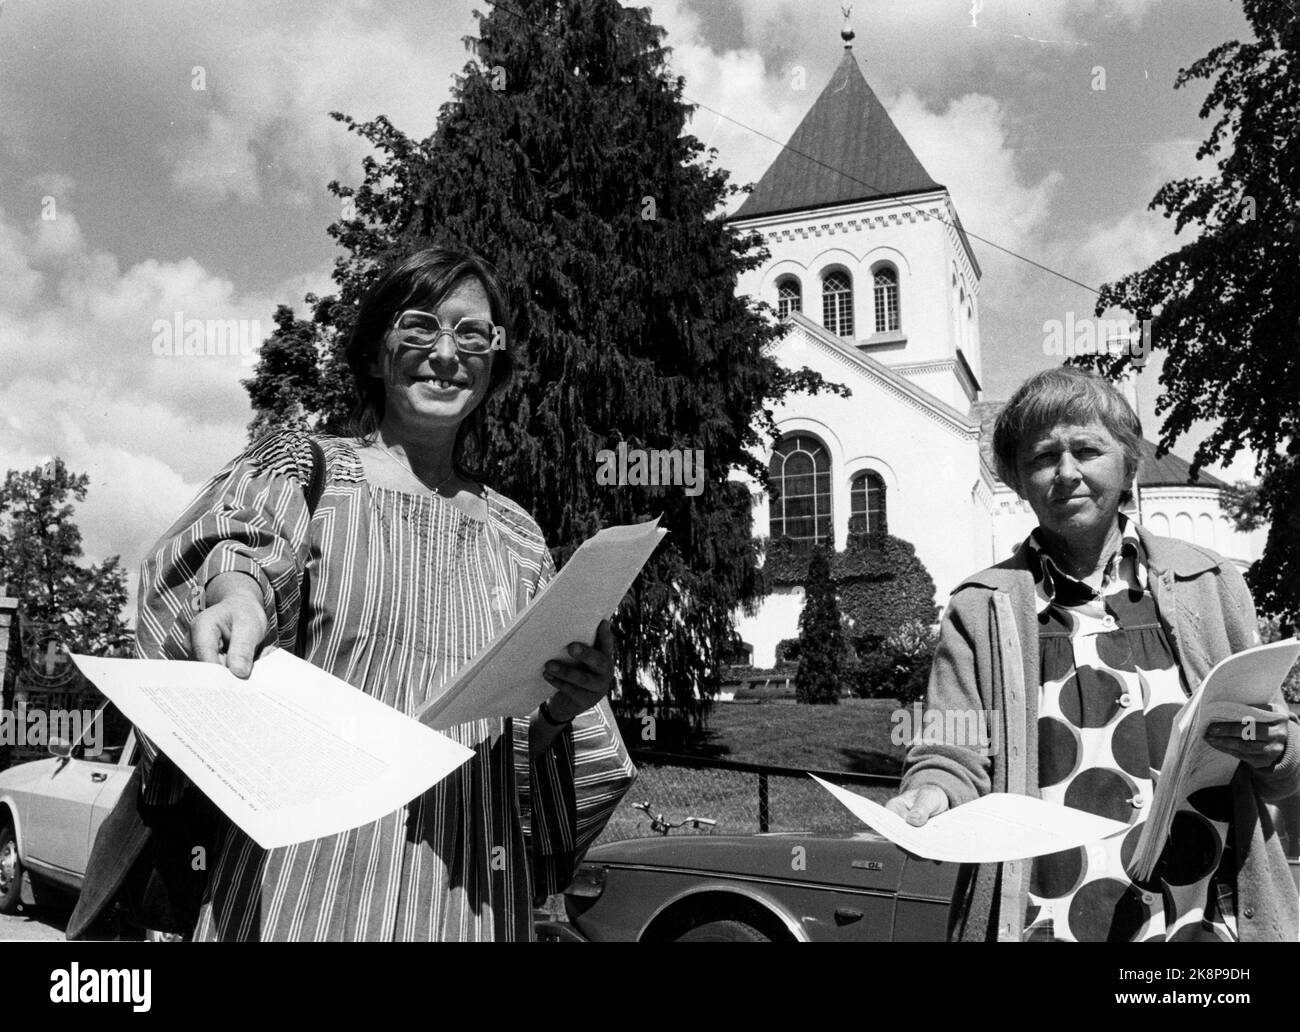 Oslo, Den 11. Juni 1978. Unterstützung für die Briefe des Hirten. Diese beiden „Handler“ des SV geben einen Brief an die norwegischen Gemeinden aus. SV antwortet auf den Hirtenbrief der Bischöfe anlässlich des Gesetzes über selbstbestimmte Abtreibungen. Foto: NTB / NTB Stockfoto